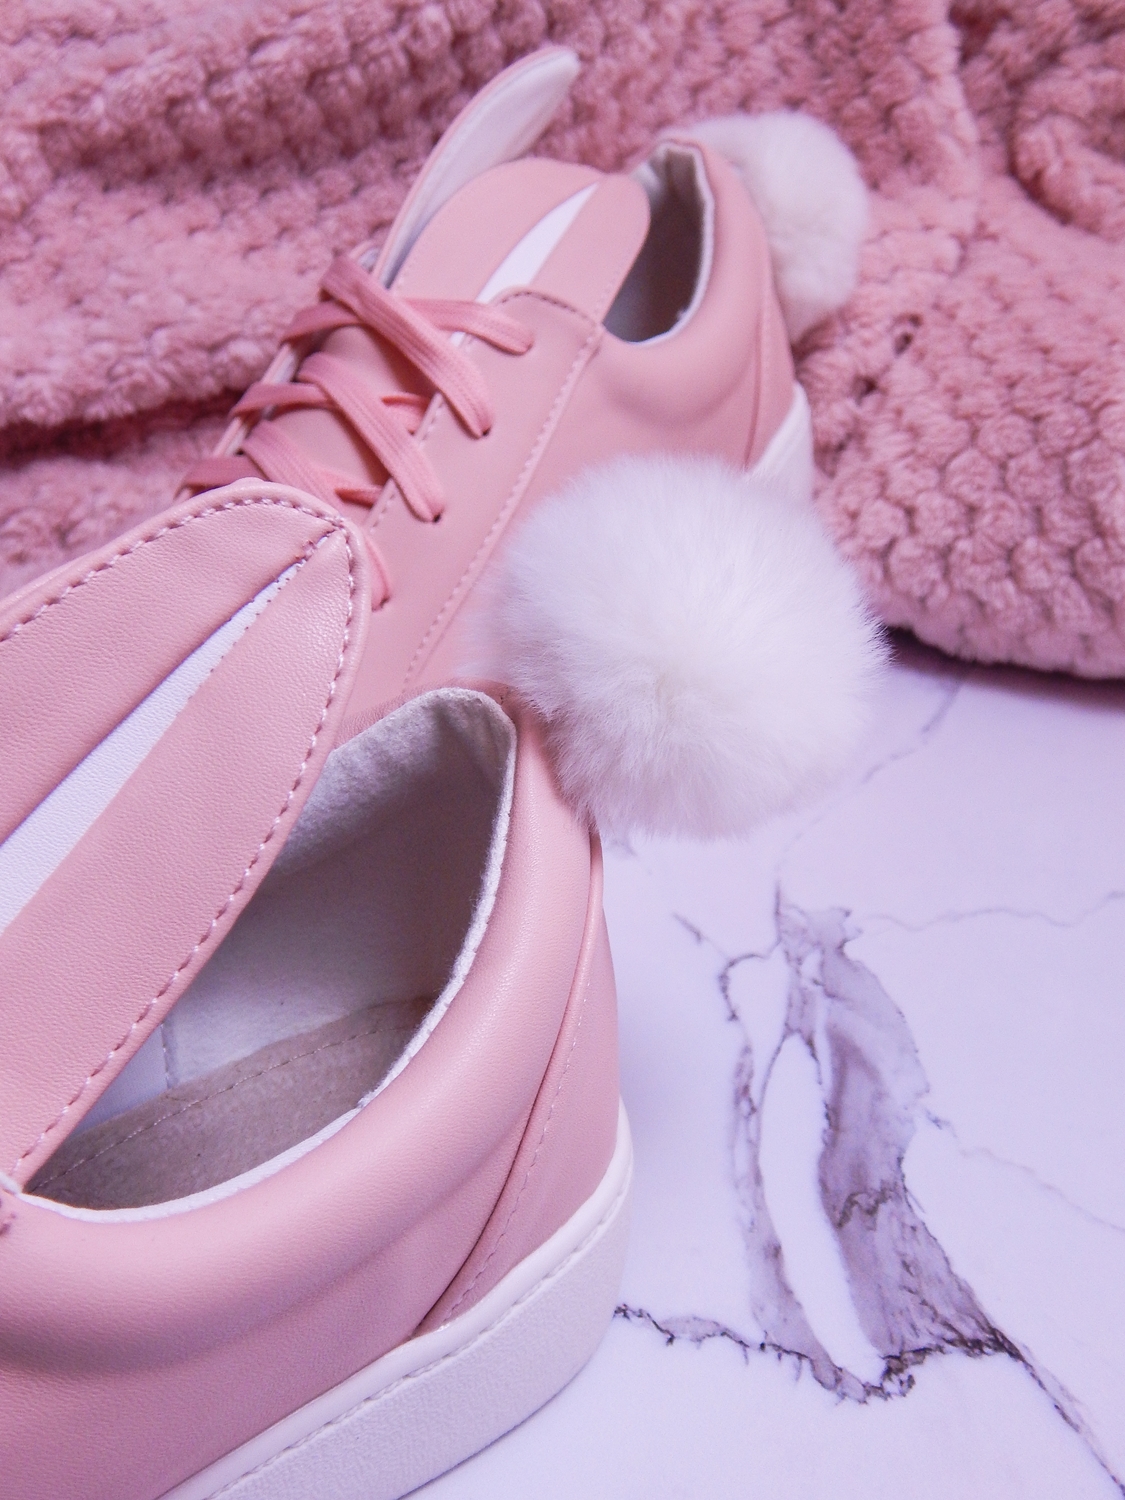 13 różowe tenisówki króliki z pomponem urocze buty na wiosnę tenisówki do każdej stylizacji renee pudrowy róż partybox buty w kształcie zająca